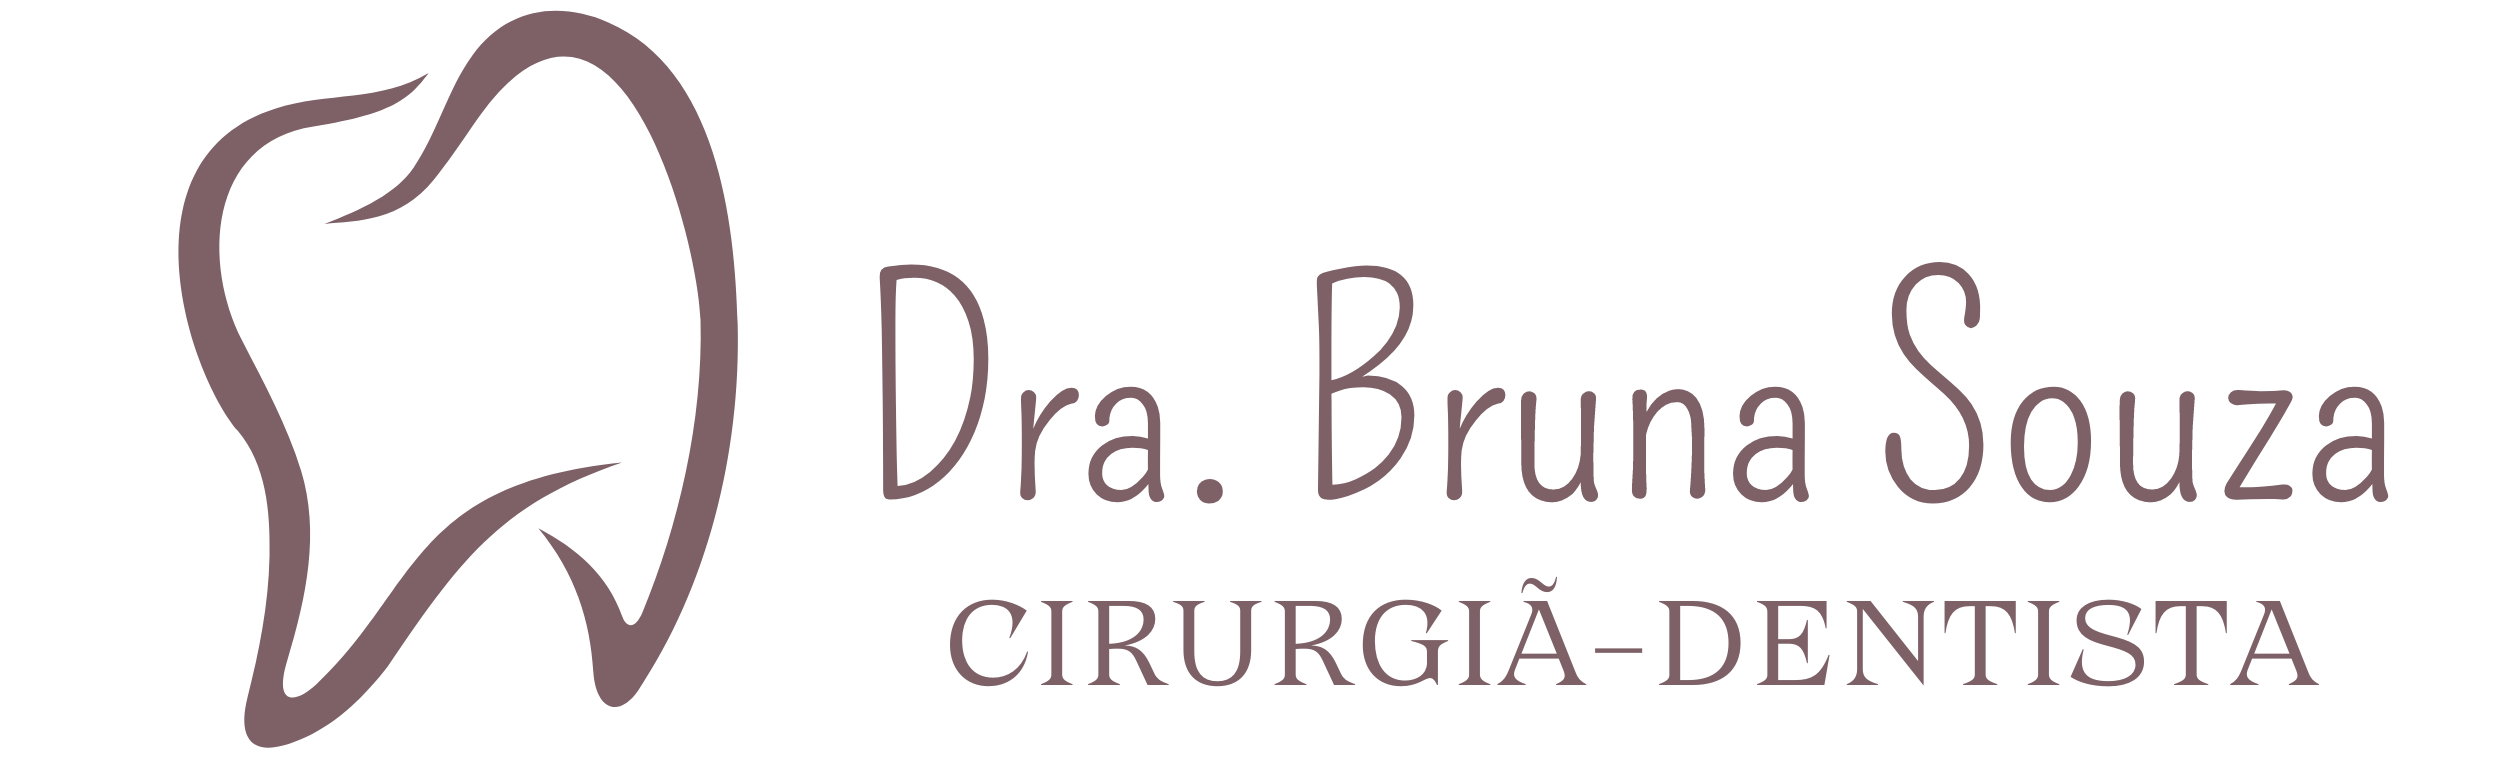 Dra. Bruna Souza